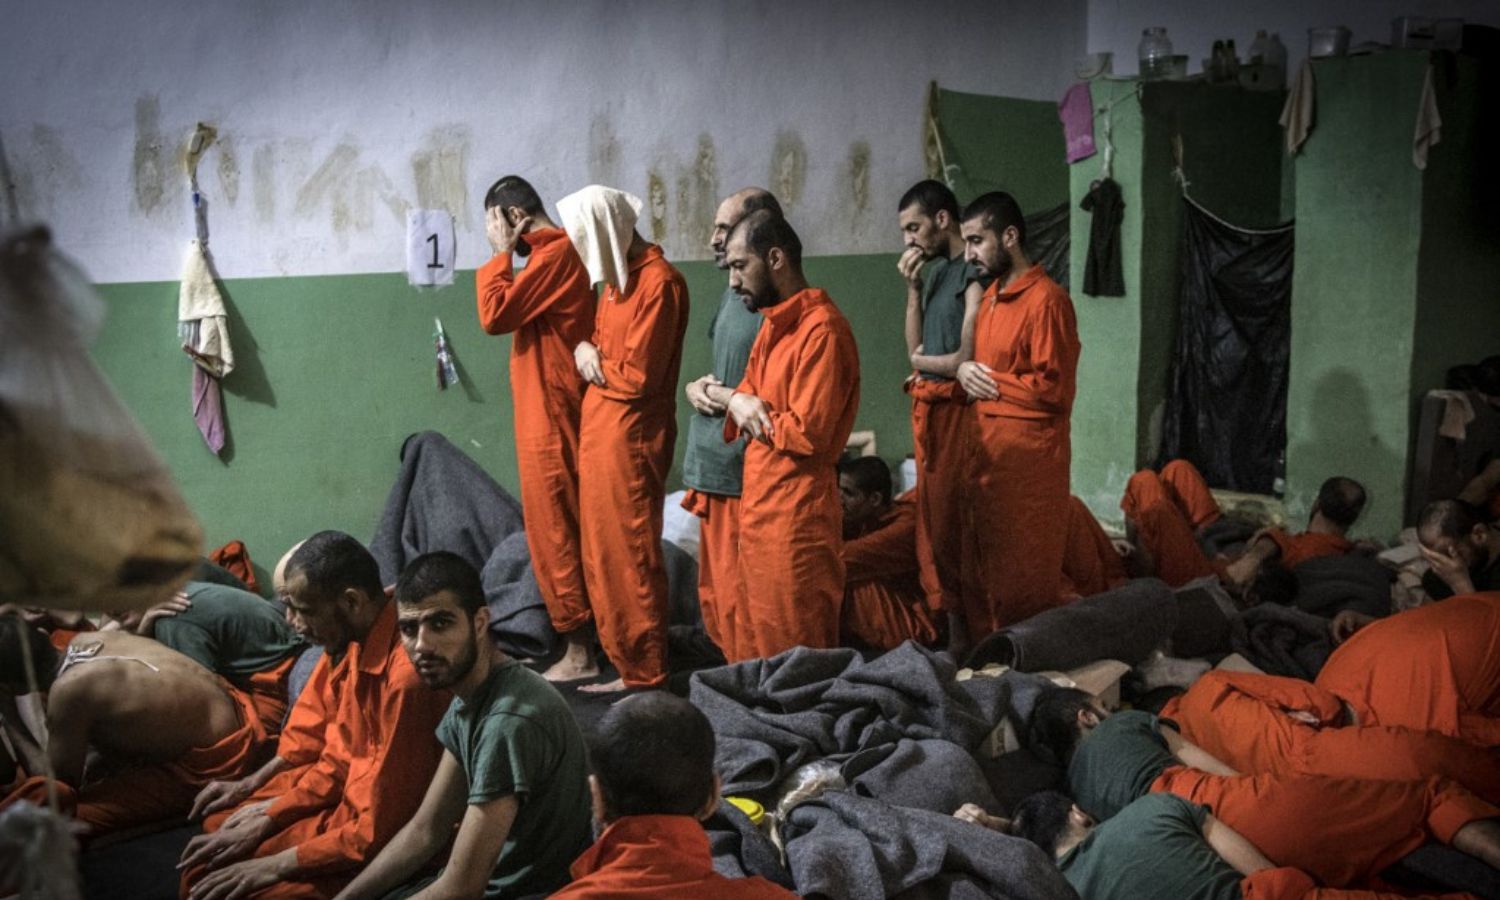 أشخاص يشتبه في انتمائهم لتنظيم "الدولة الإسلامية" في زنزانة بسجن سيناء في حي الغويران في مدينة الحسكة شمال شرقي سوريا – 26 من تشرين الأول 2019 (AFP)